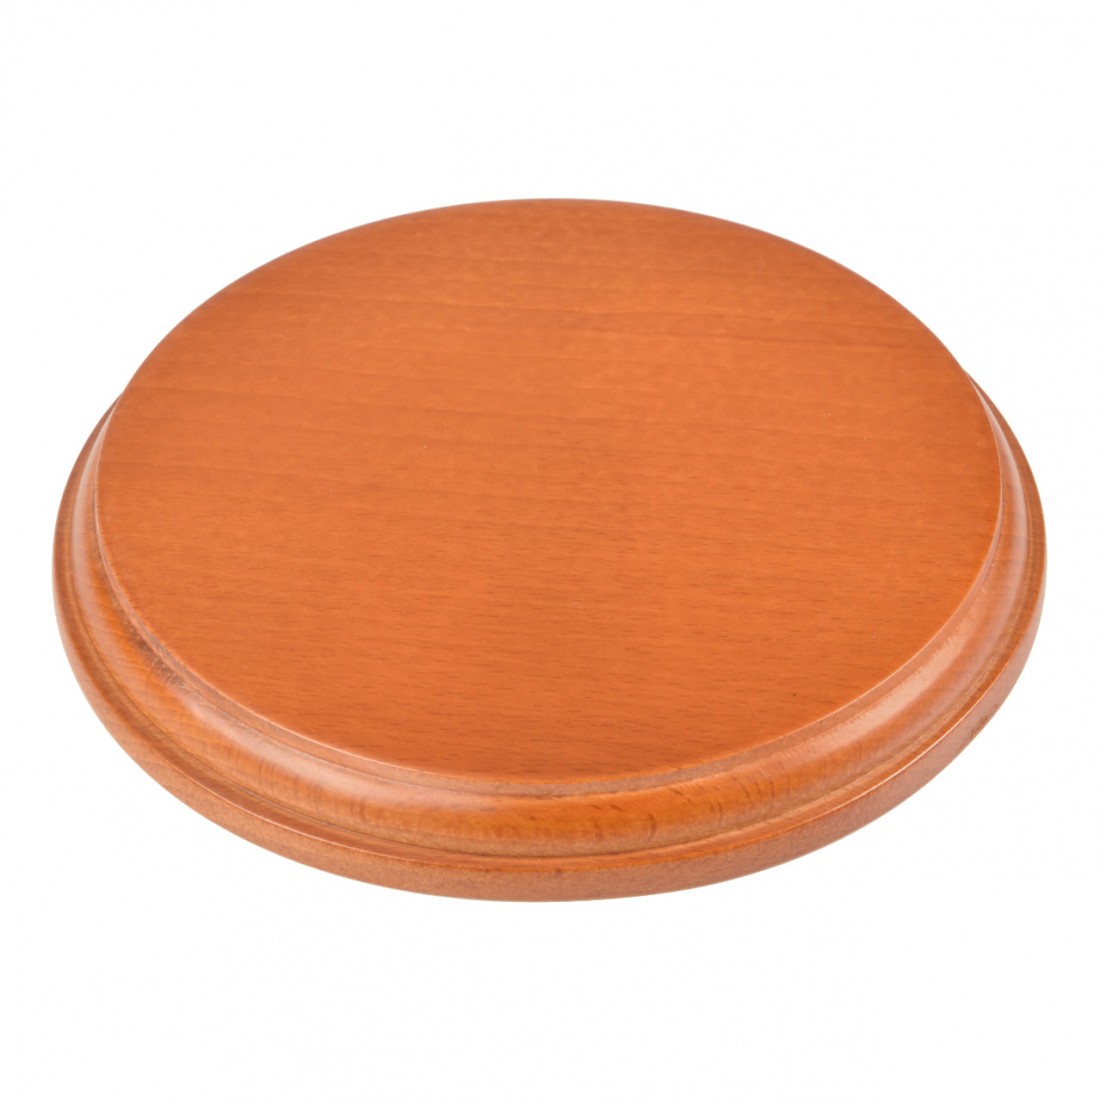 Wooden round base mm.160 varnished